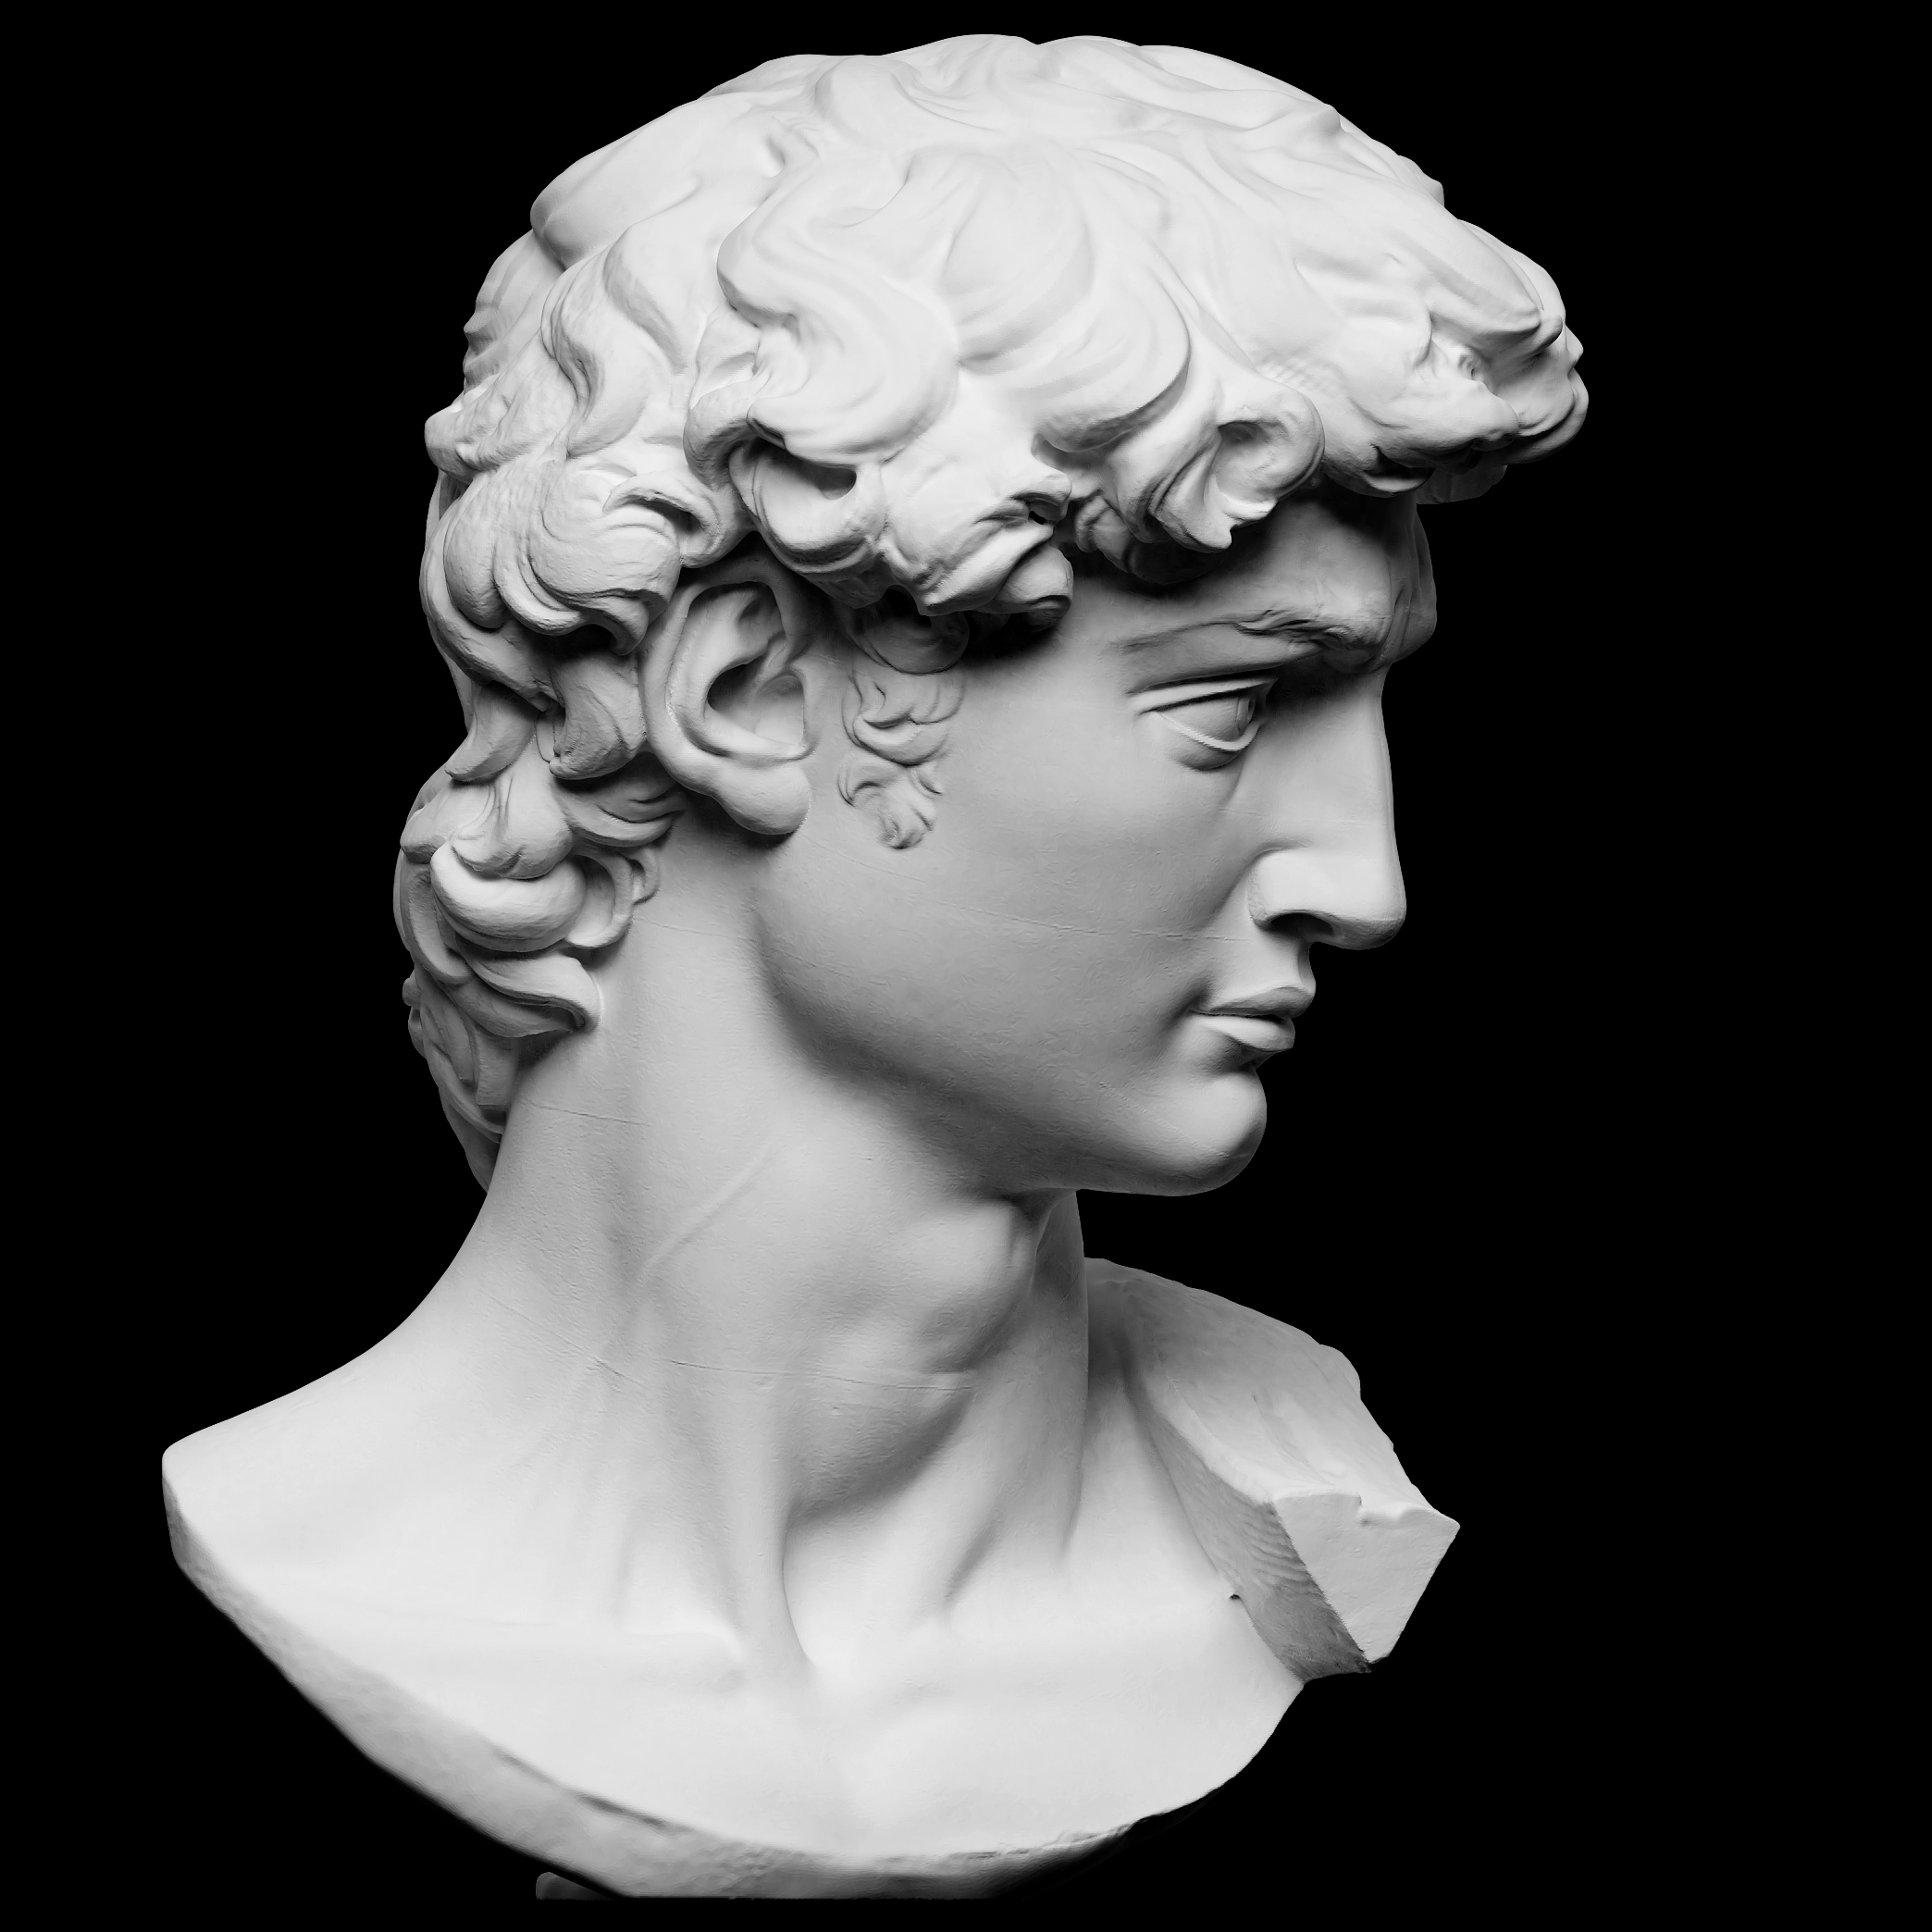 Head of Michelangelo's David